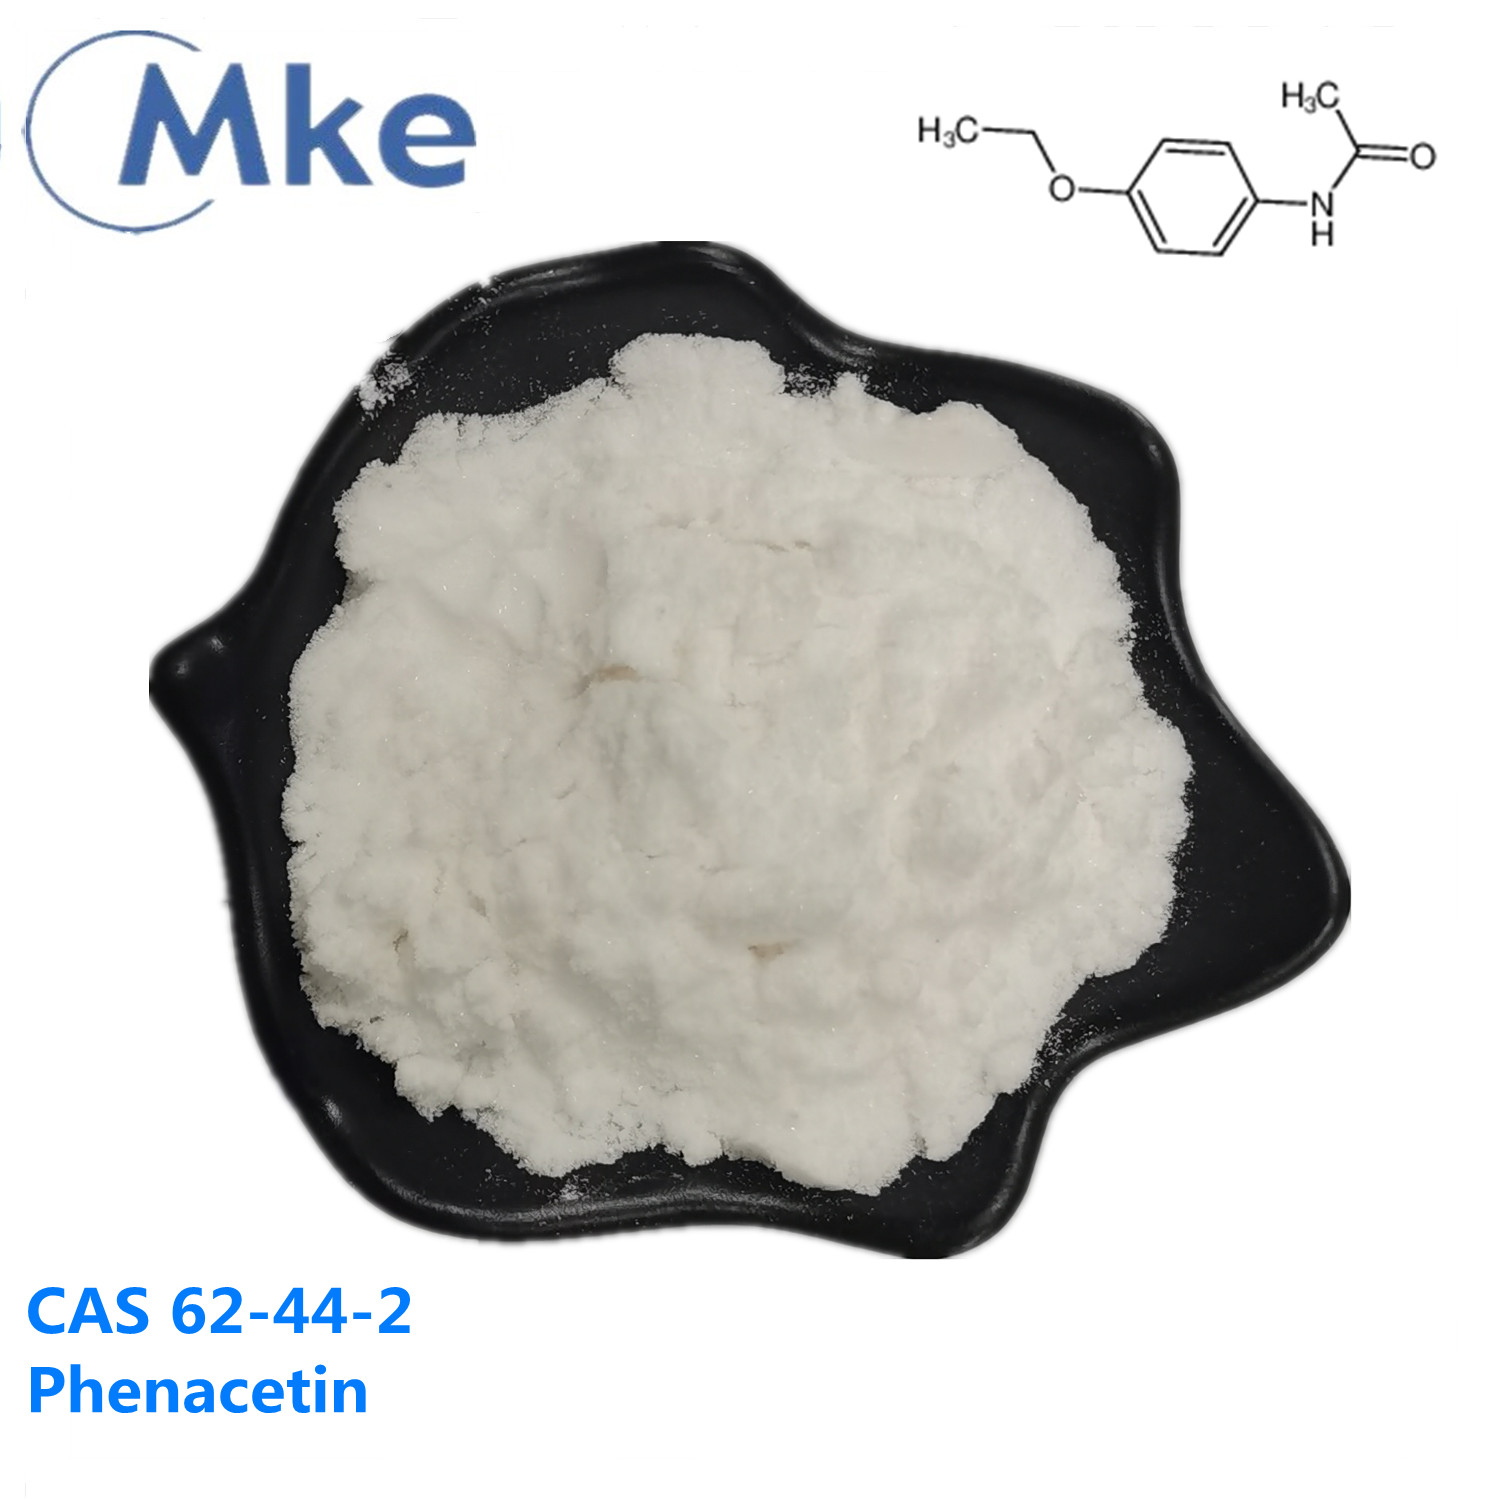 Phenacetin/Acetphenetidin cas 62-44-2 über eine sichere Leitung versendet